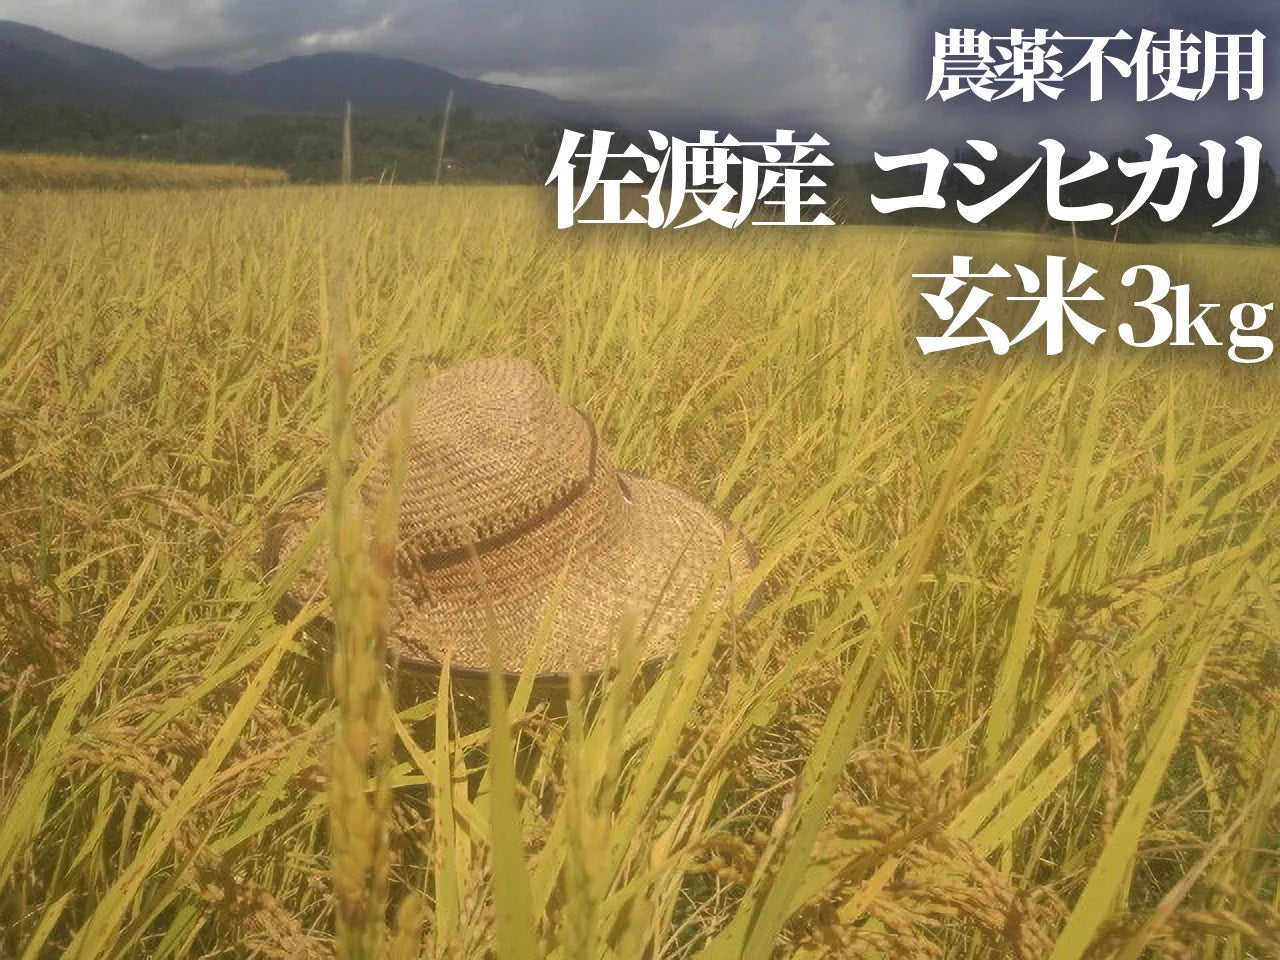 【令和5年産】農薬不使用 佐渡産コシヒカリ 玄米3kg